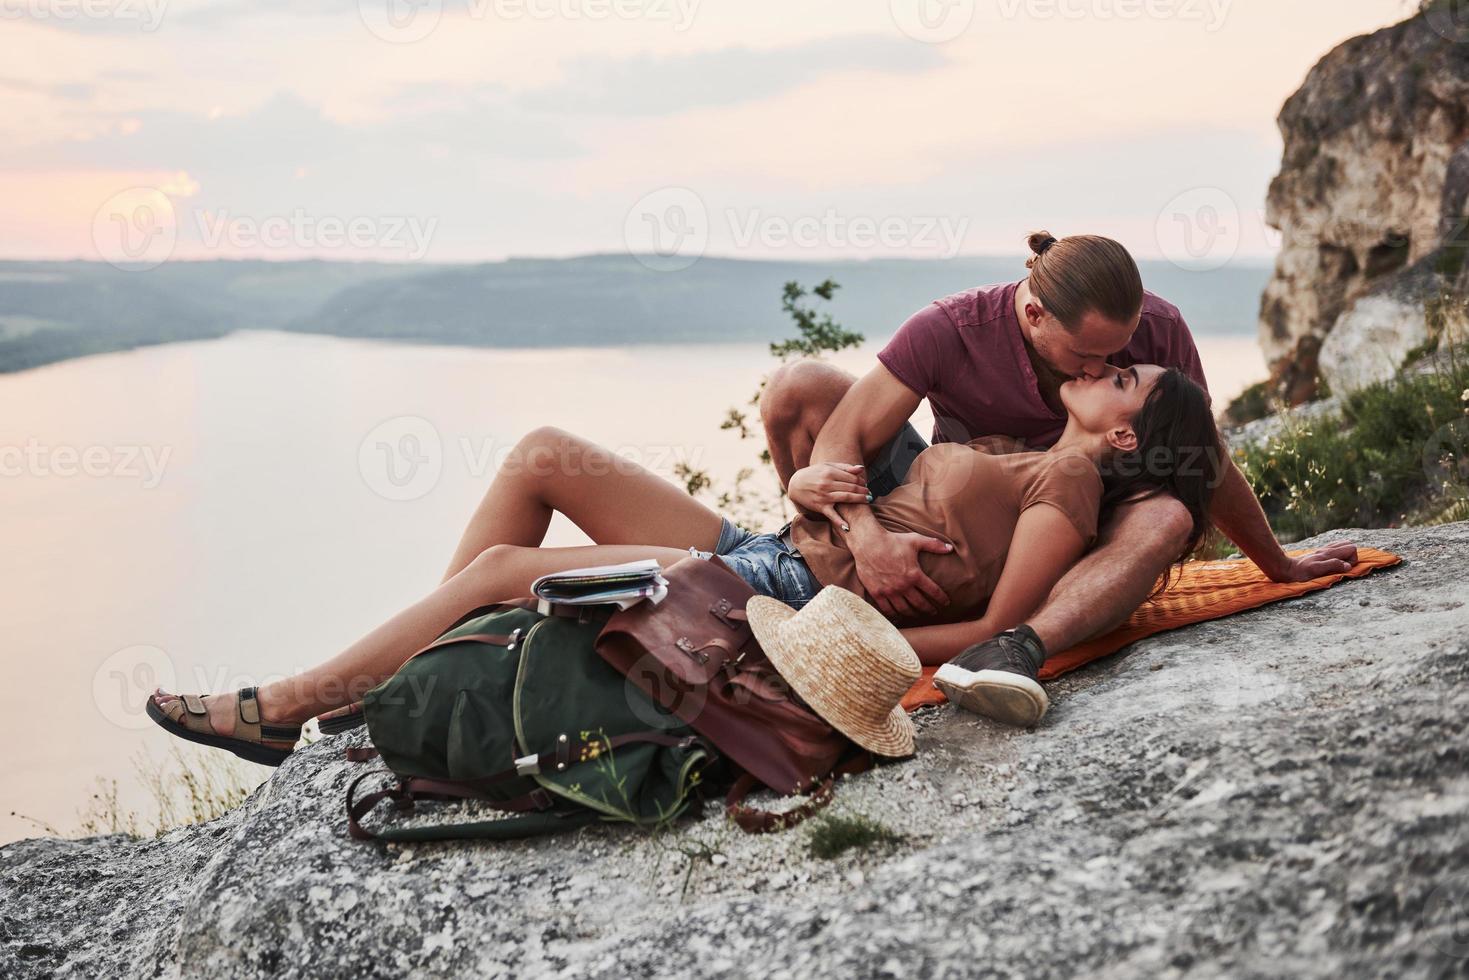 kramar par med ryggsäck sitter på toppen av berget njuter av utsikten kusten en flod eller sjö. resa längs berg och kust, frihet och aktivt livsstilskoncept foto